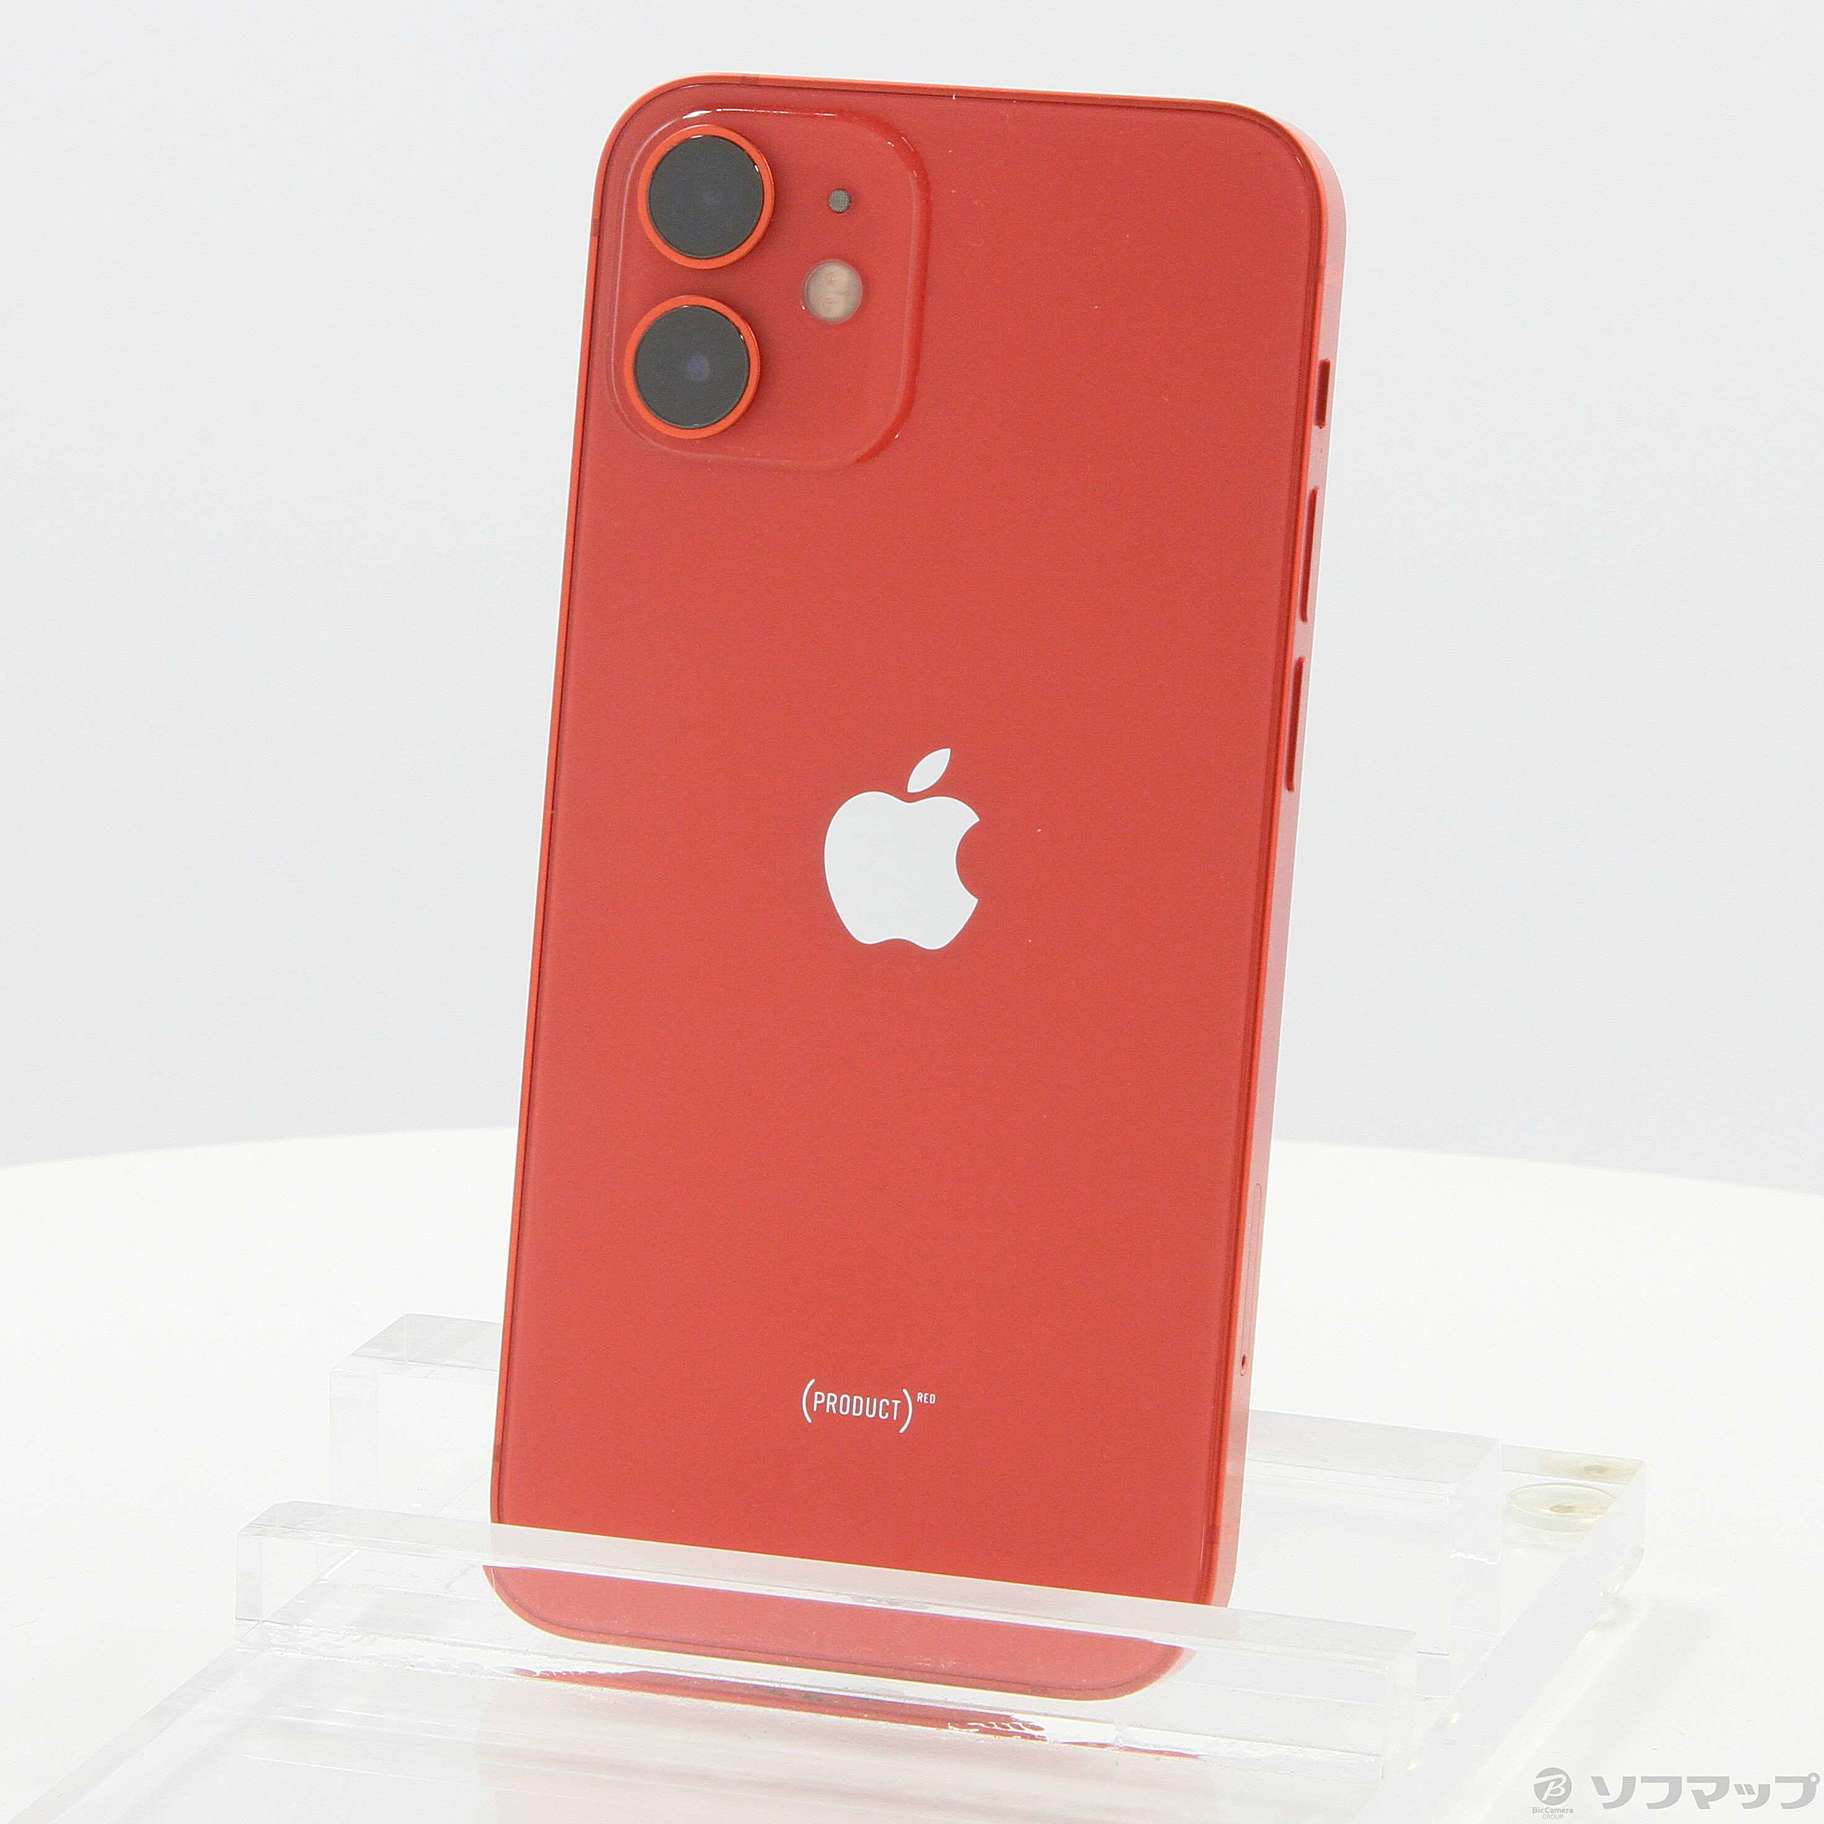 16,340円iPhone 12 mini Product(RED) レッド SIMフリー